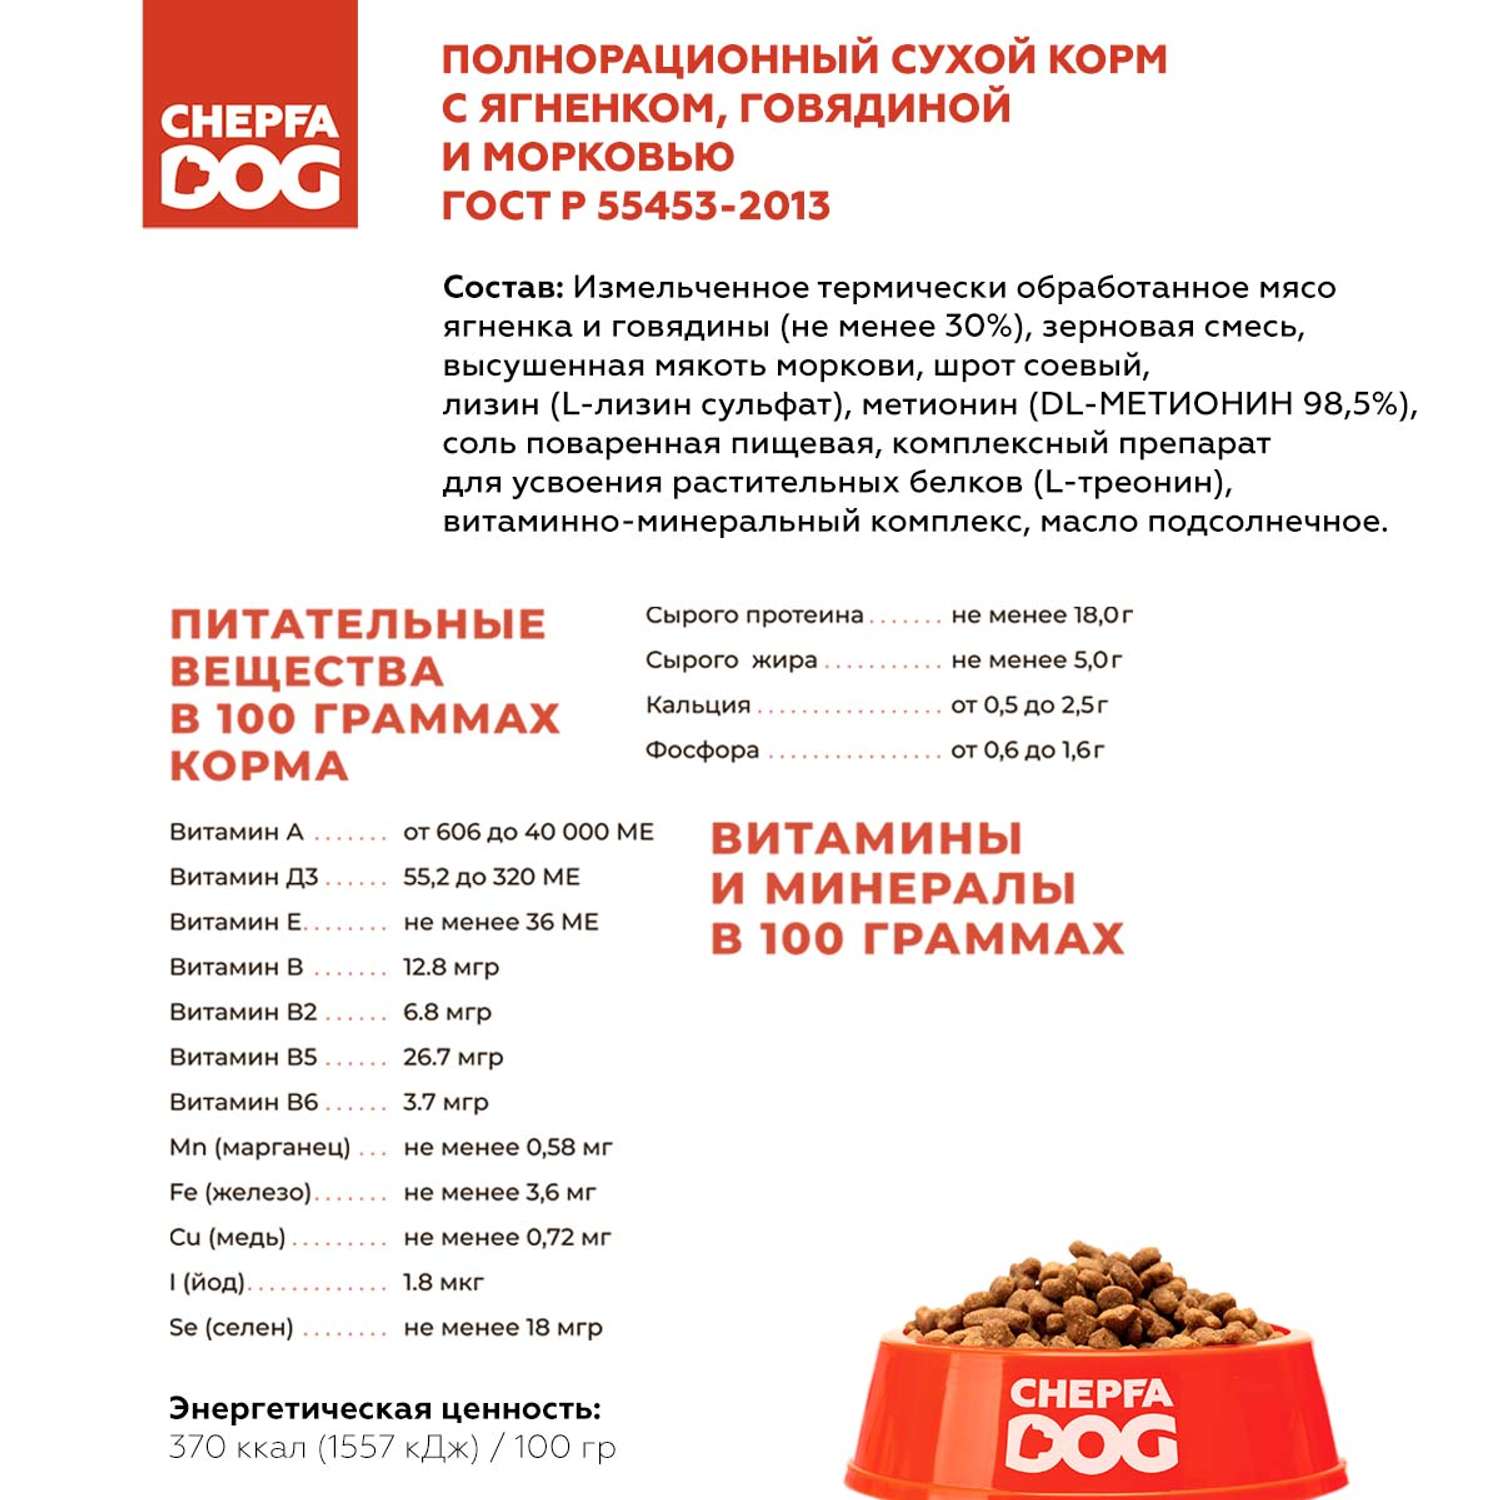 Сухой корм Chepfa Dog полнорационный ягненок и говядина 1.1 кг для взрослых собак малых и мелких пород - фото 4